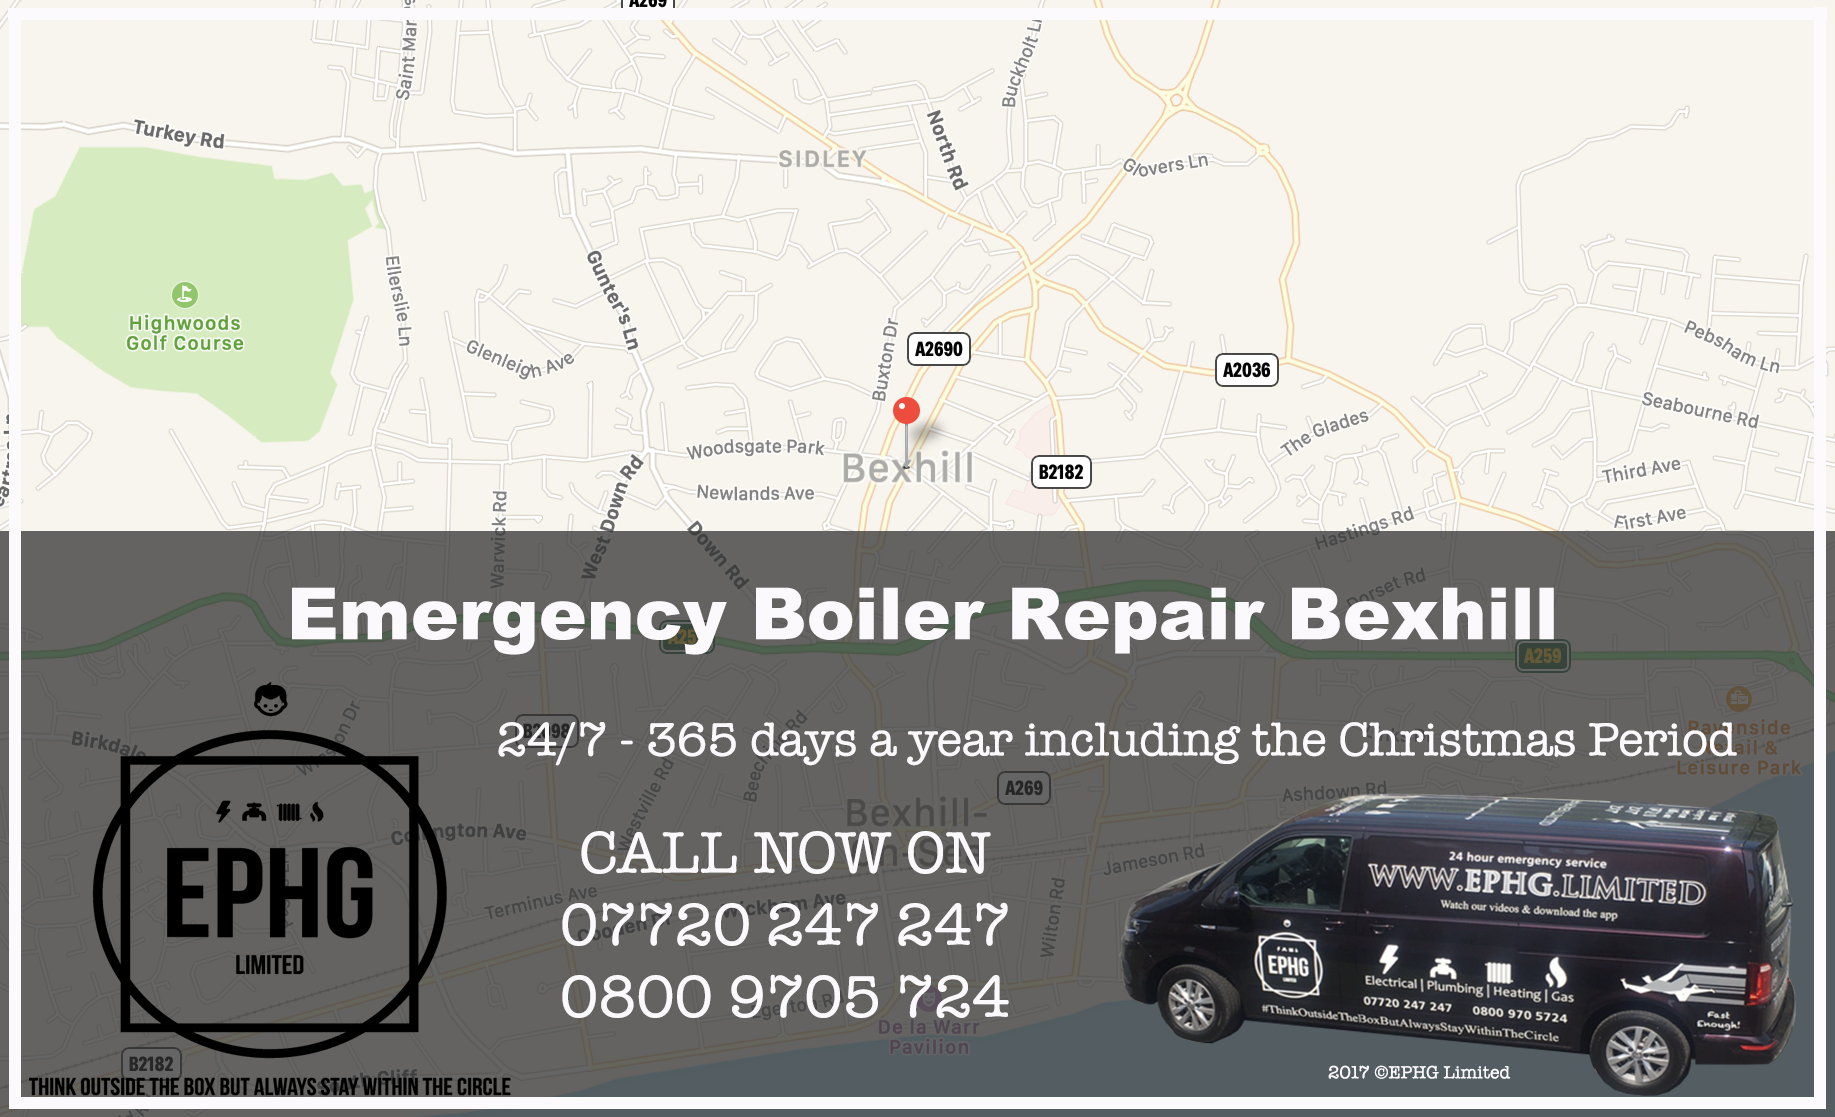 24 Hour Emergency Boiler Repair Bexley